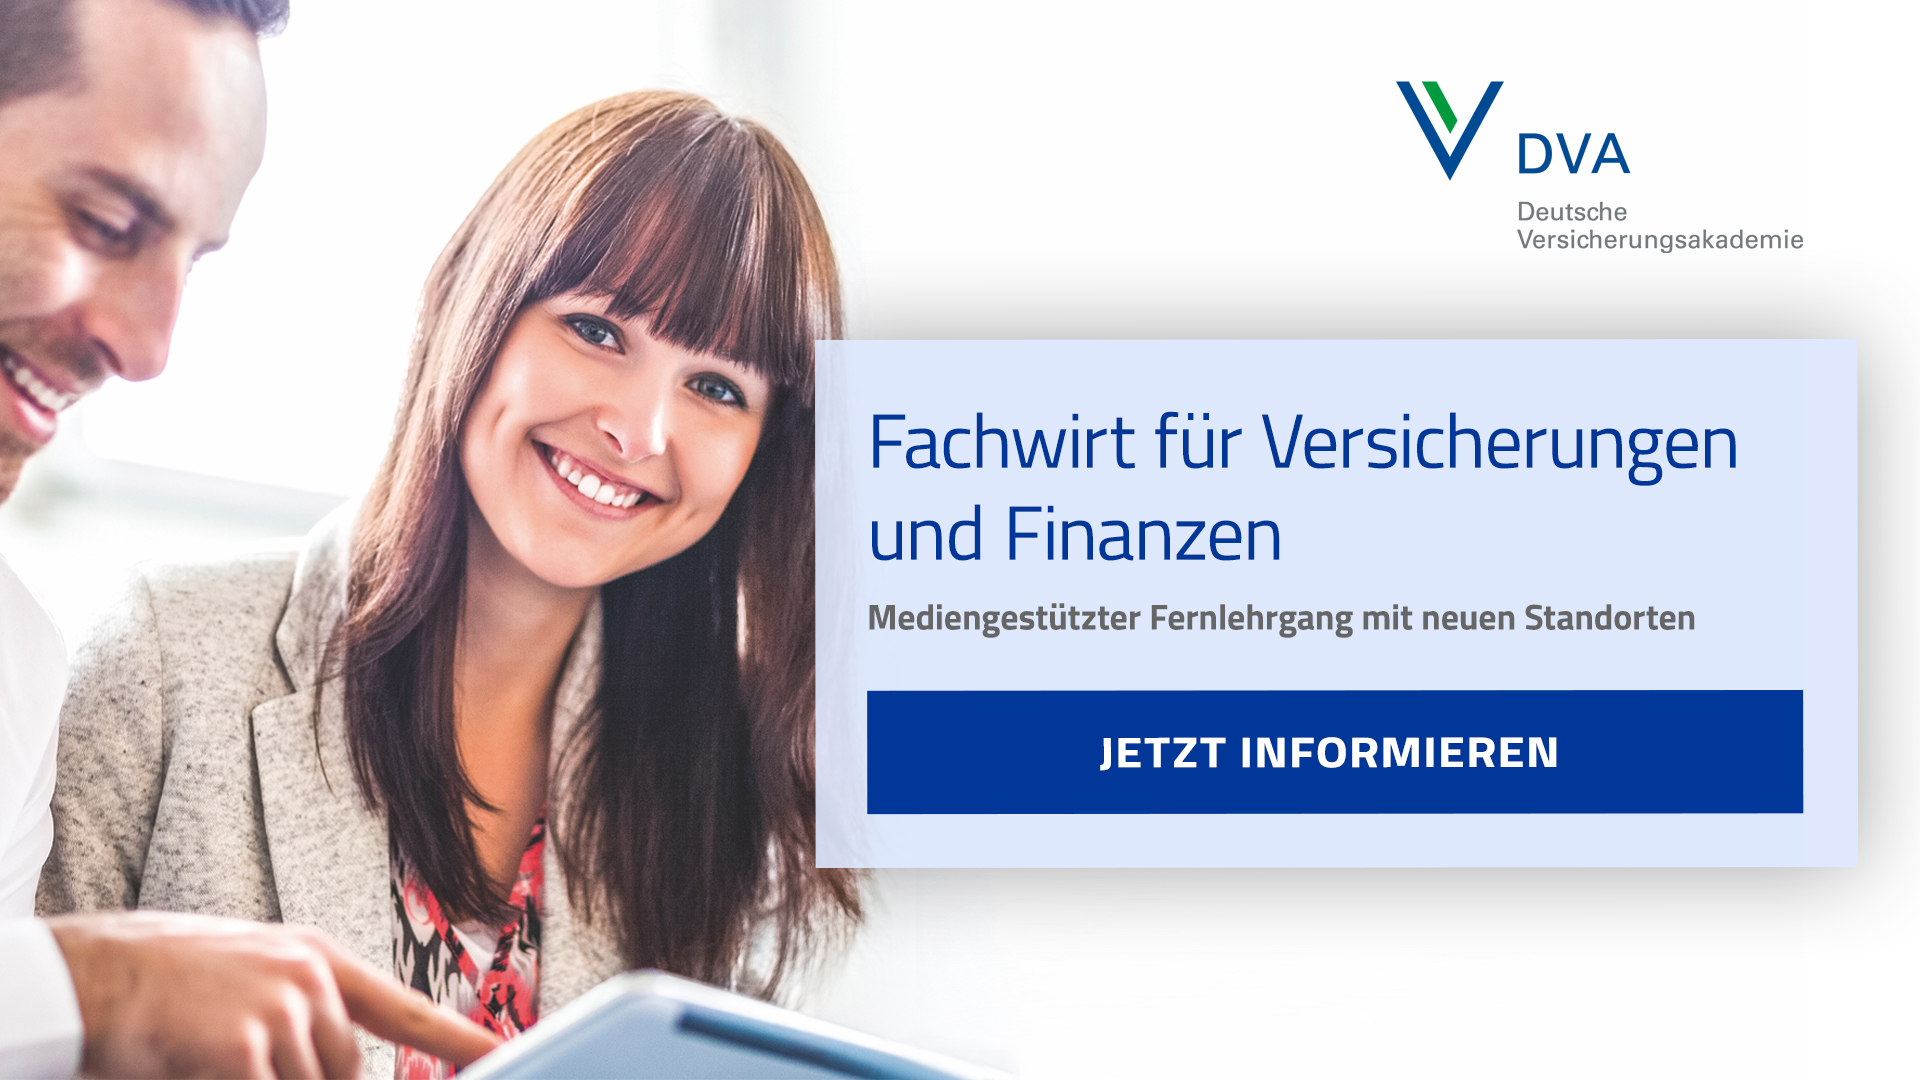 Flexibel und Online zum Geprüften Fachwirt für Versicherungen und Finanzen – jetzt Info-Meeting an den Studienorten Hamburg/Lübeck/Itzehoe und München!